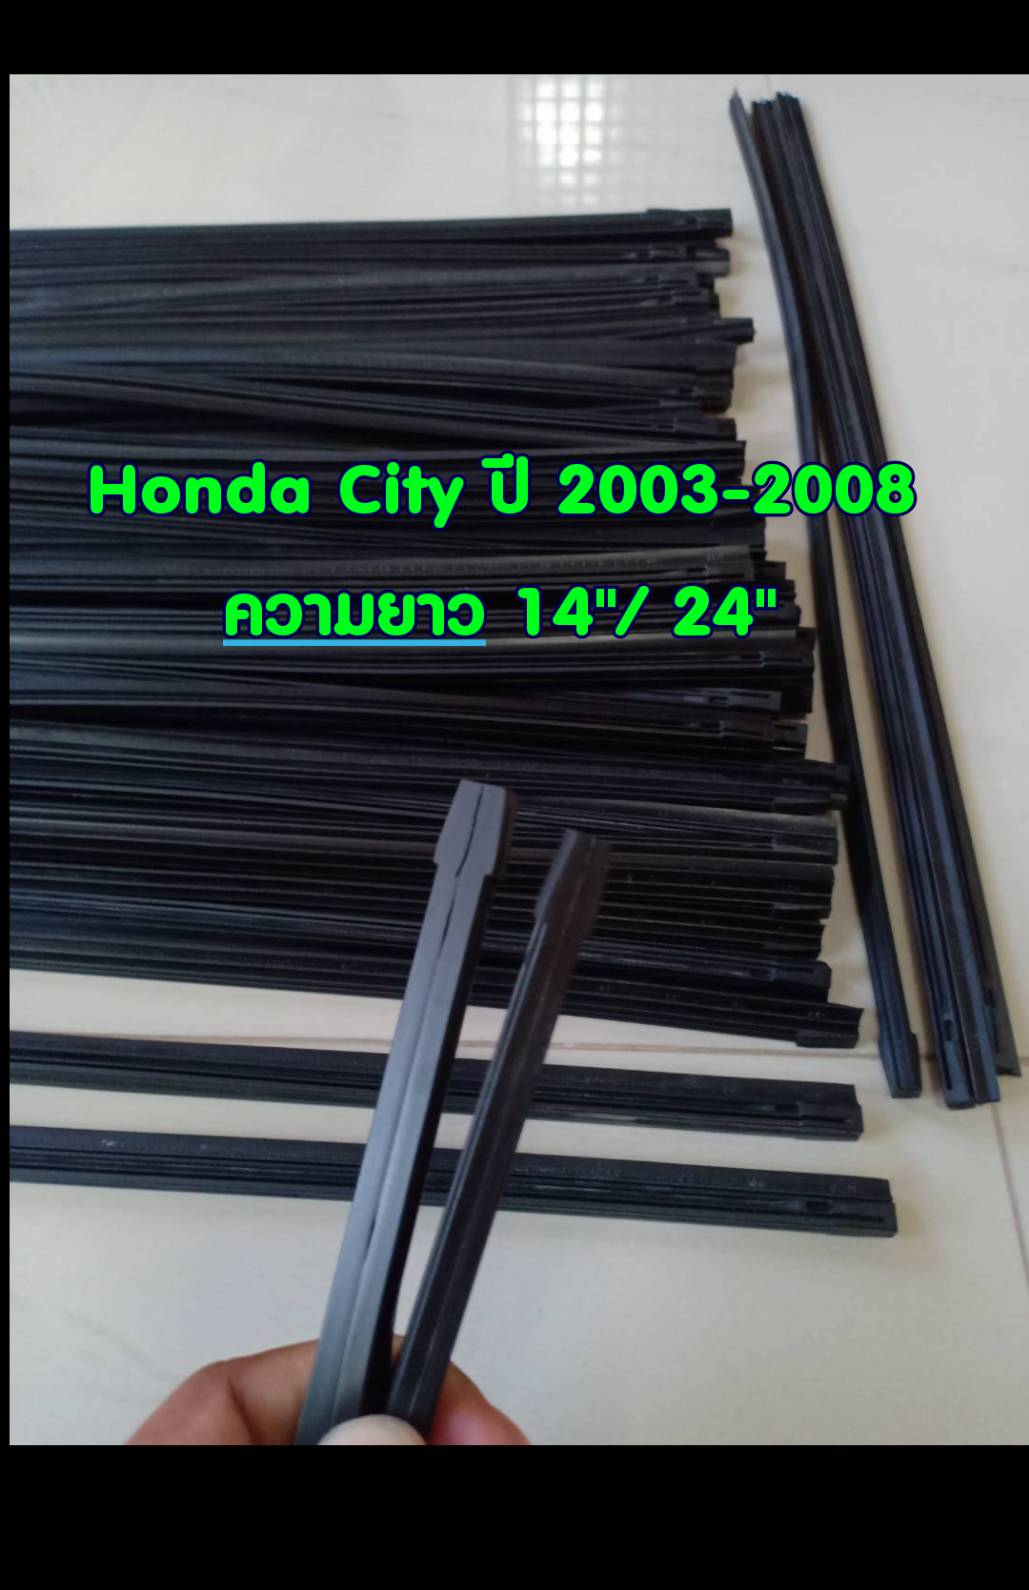 ยางปัดน้ำฝนแบบรีฟิลแท้ตรงรุ่น Honda New City และ City ZX ปี 2003-2008 ขนาด 14 นิ้ว และ 24 นิ้ว จำนวน 1 คู่